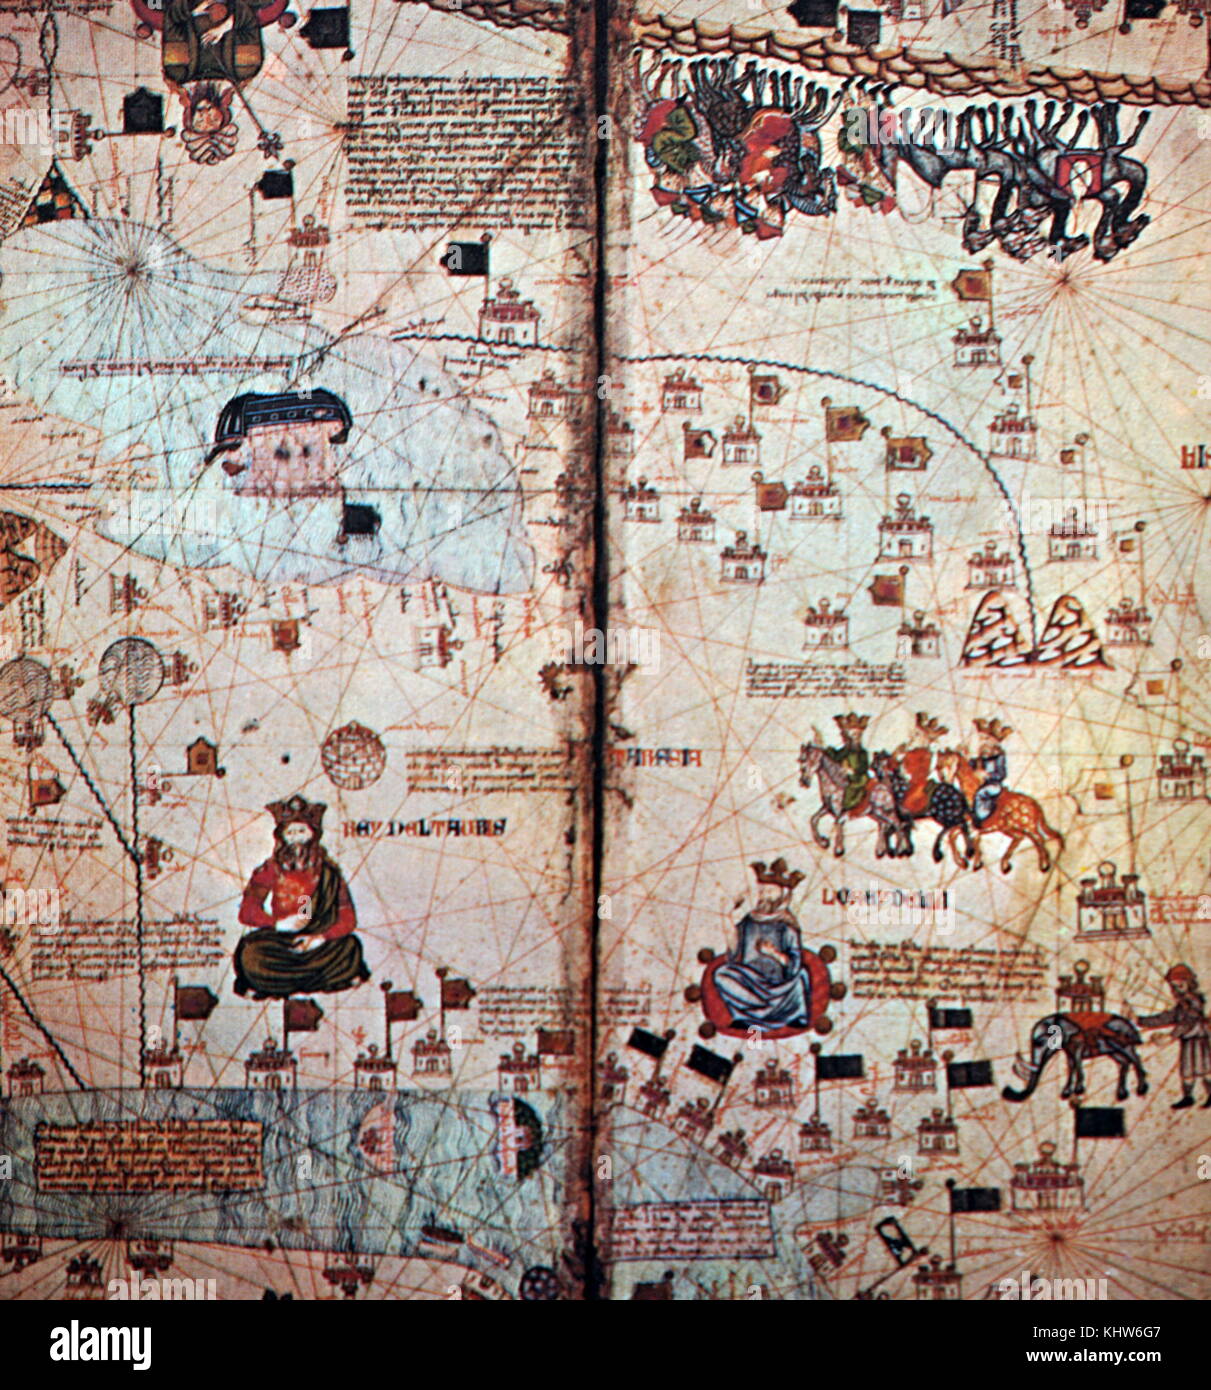 Parte di un palazzo del XIV secolo spagnolo mappa del mondo, dipinta su pannelli in legno, noto come il catalano Atlas. Datato xiv secolo Foto Stock